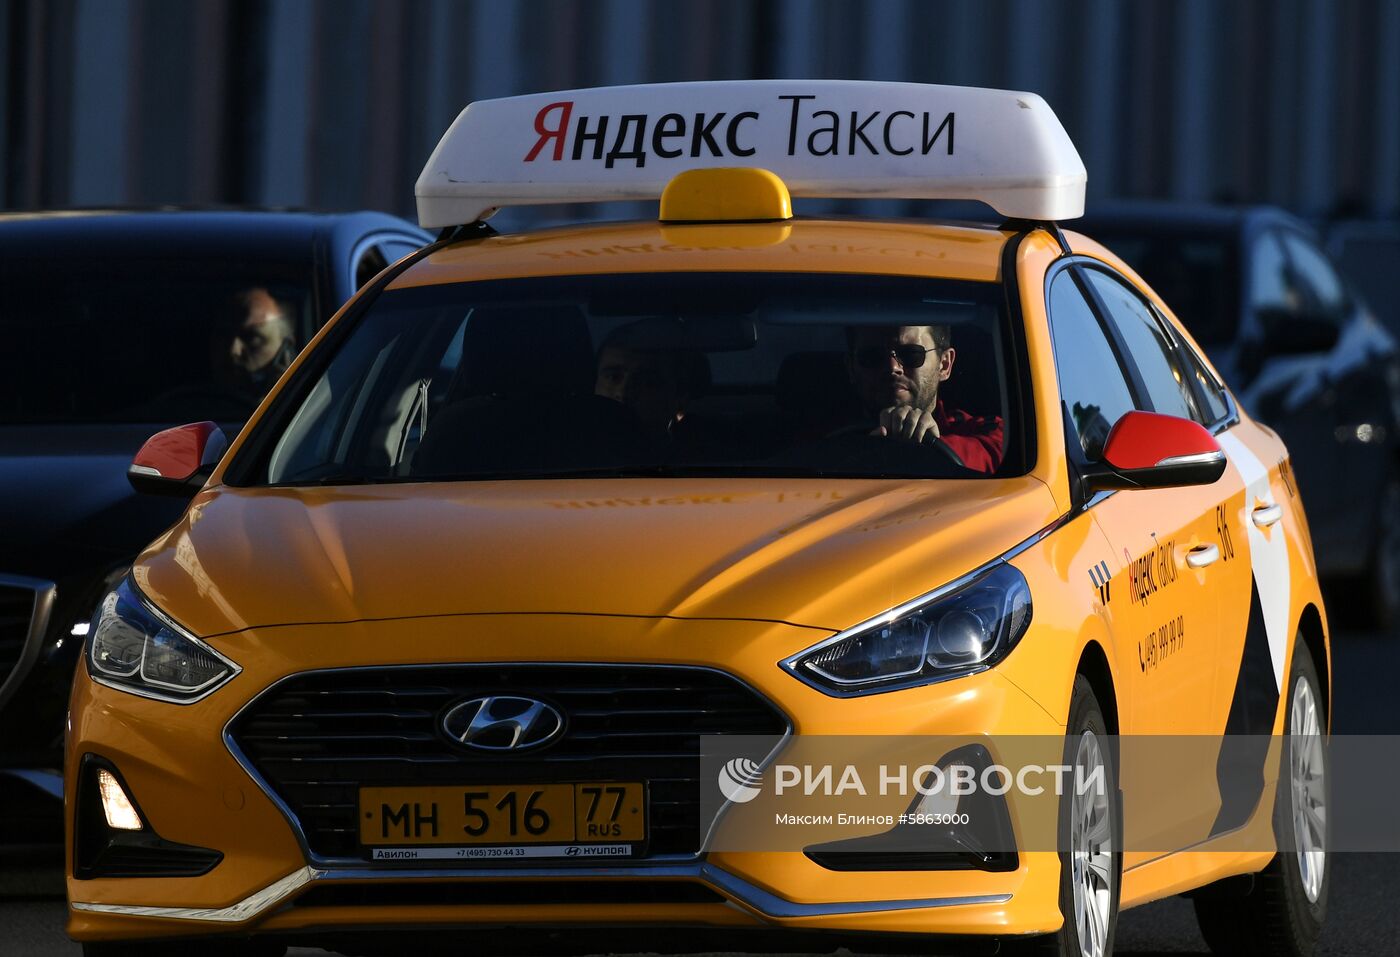 Такси на одной из улиц Москвы